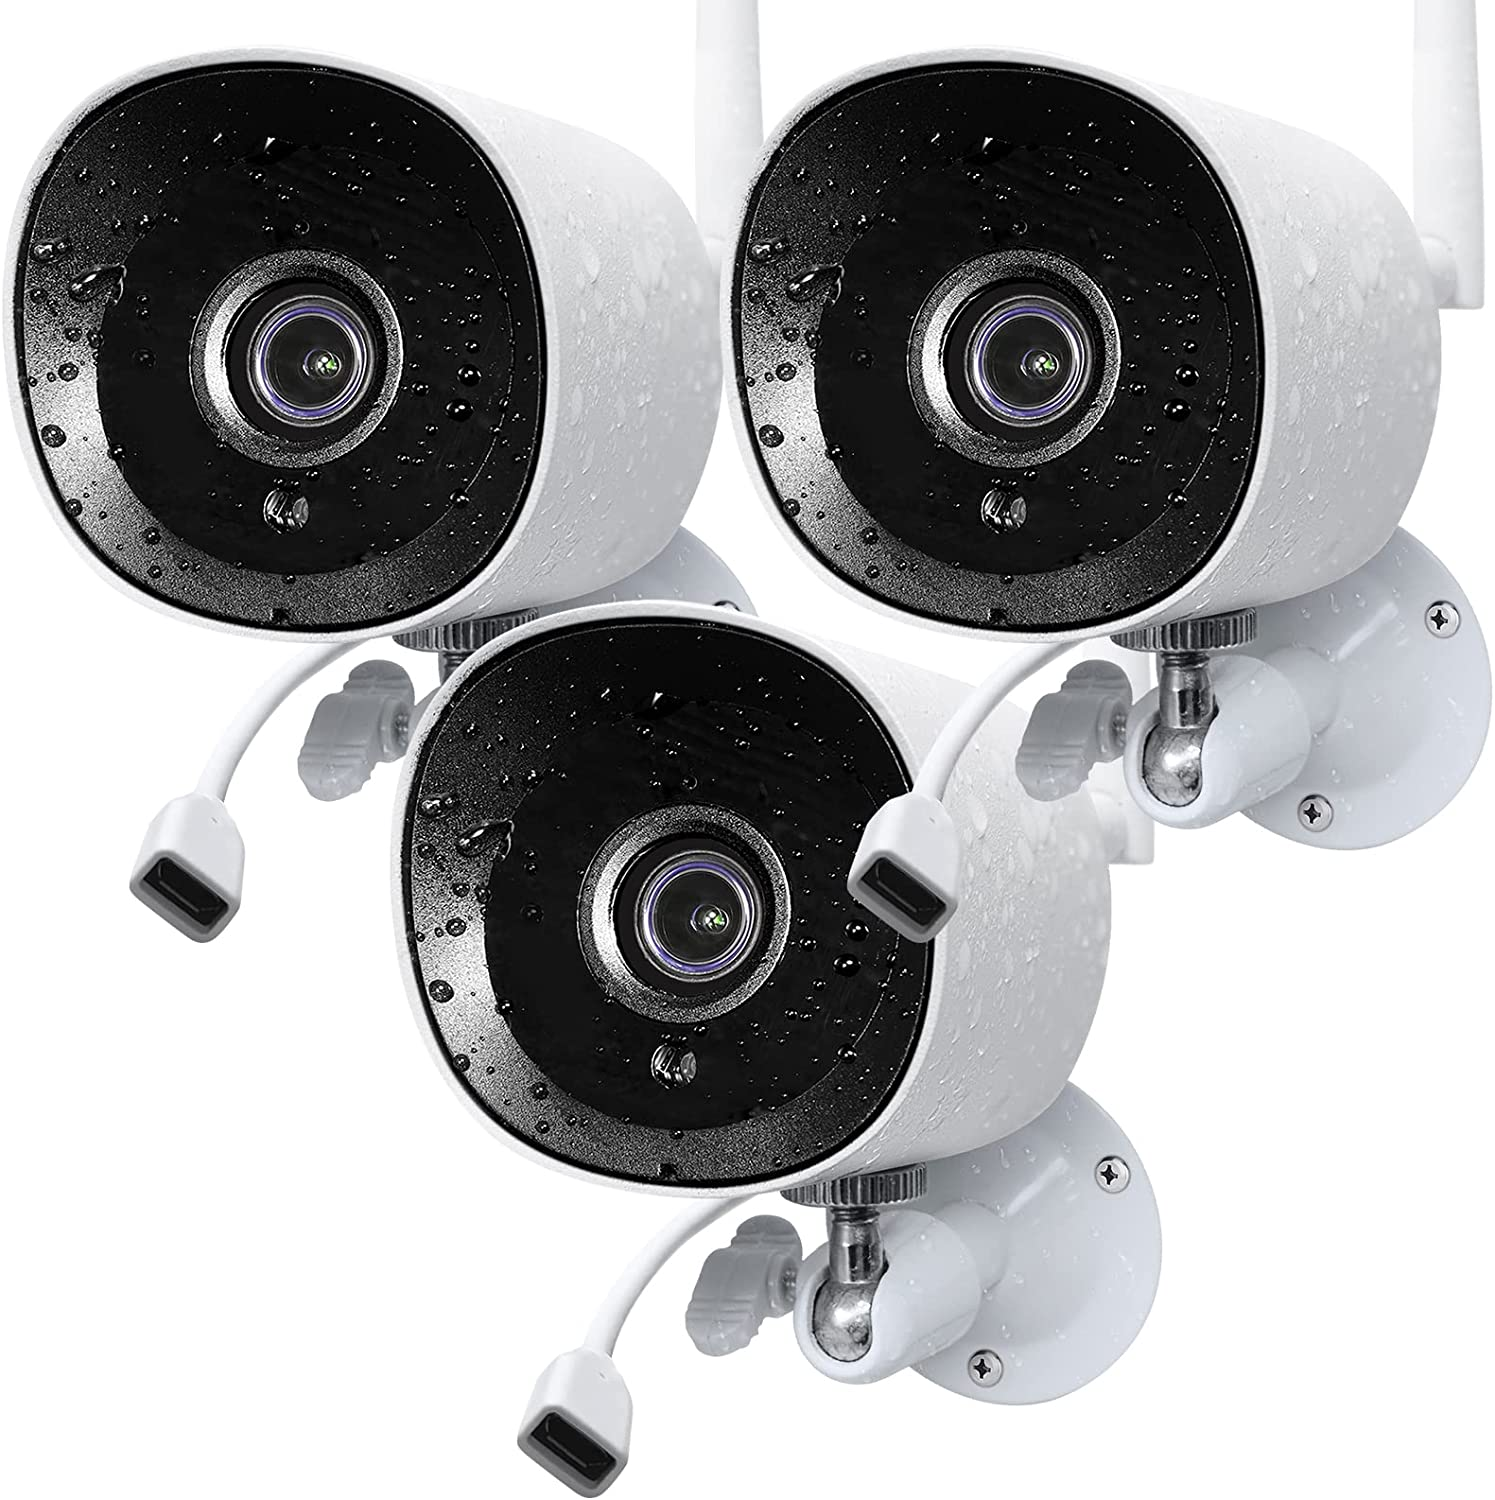 Rraycom 2K Mini T1 Cameras for Home Security